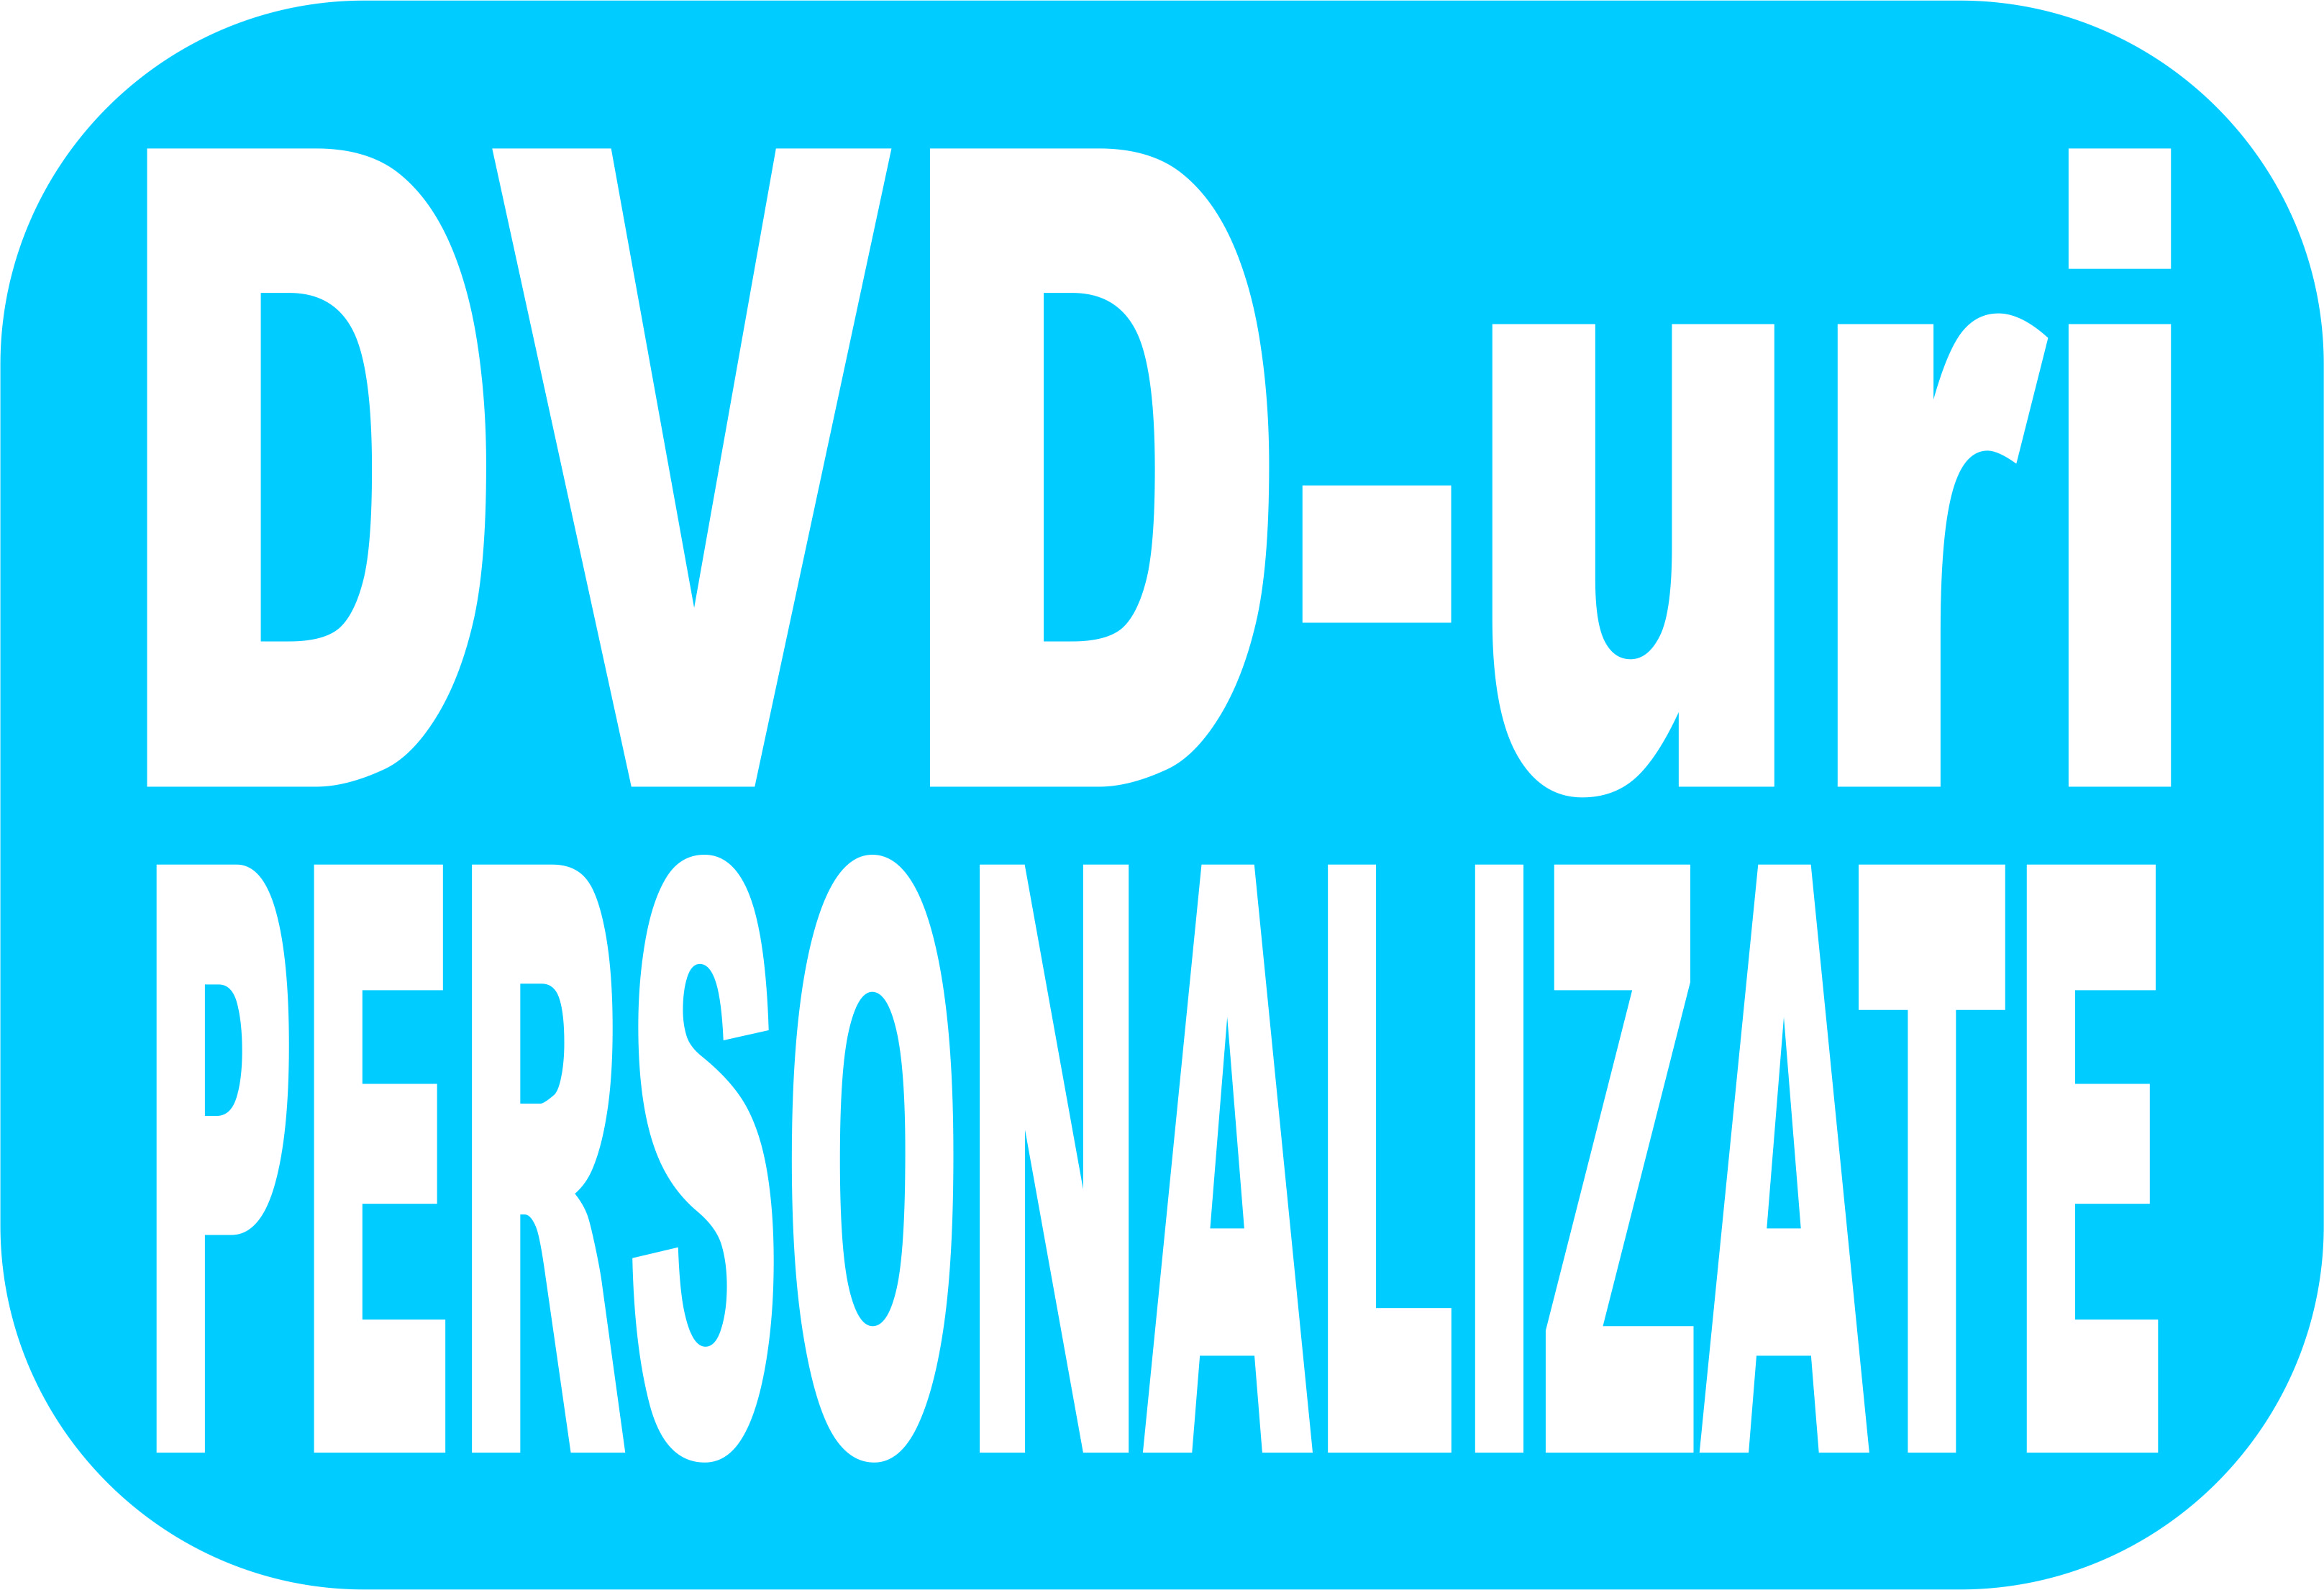 DVD PERSONALIZAT